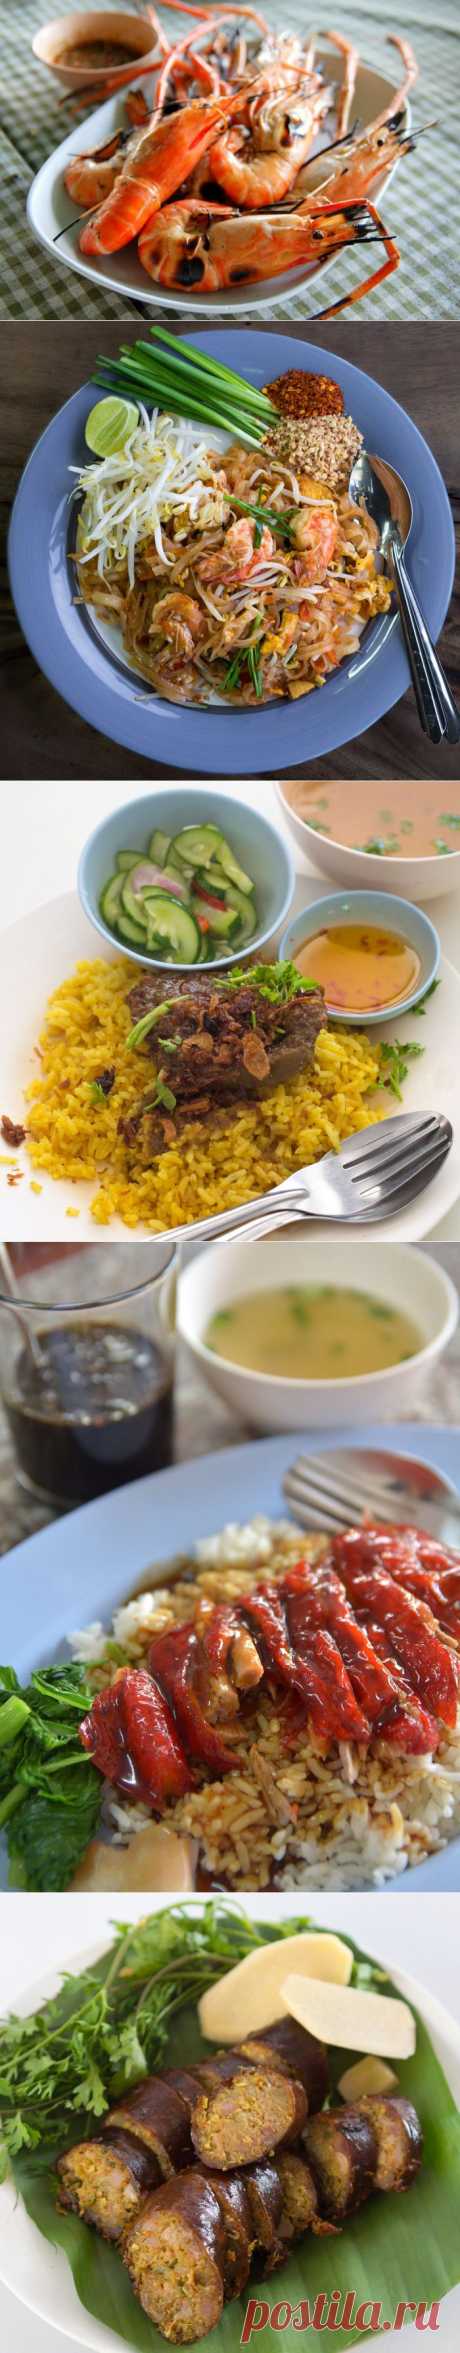 Тайская кухня: Самые вкусные блюда • НОВОСТИ В ФОТОГРАФИЯХ